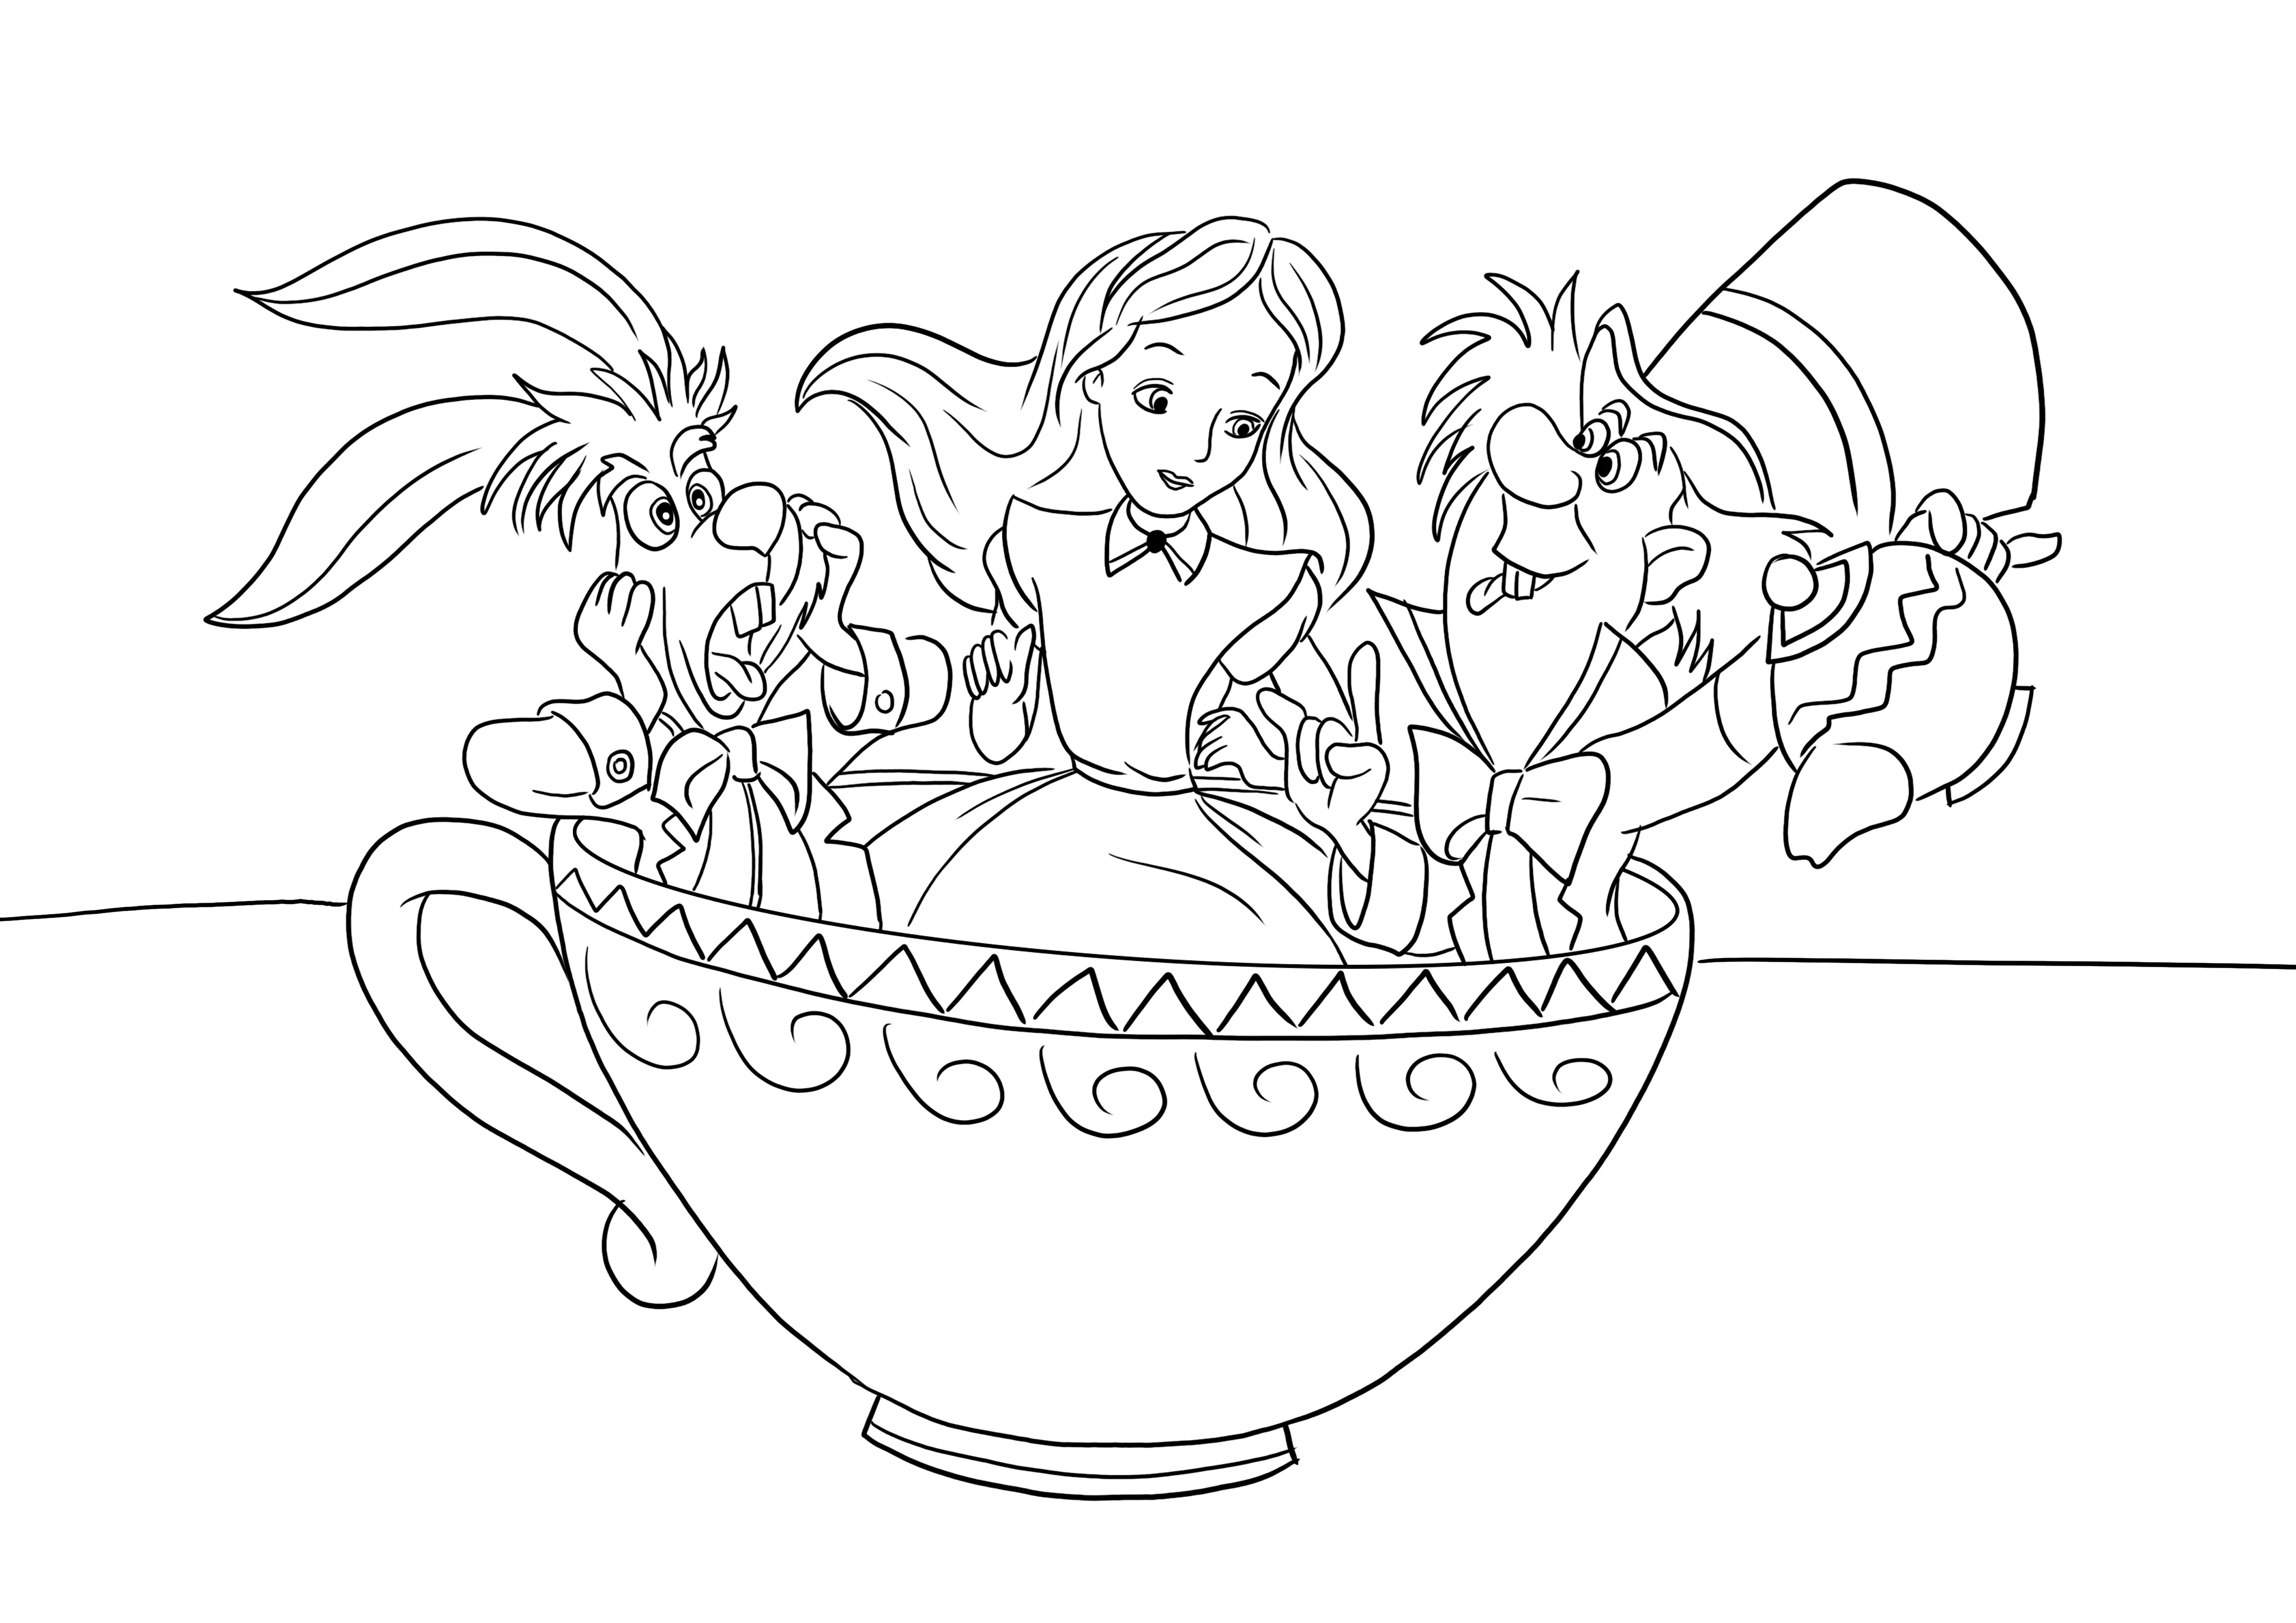 Imagen para colorear de Mad Hatter-Alice-Conejo en una taza de té para descargar o imprimir gratis